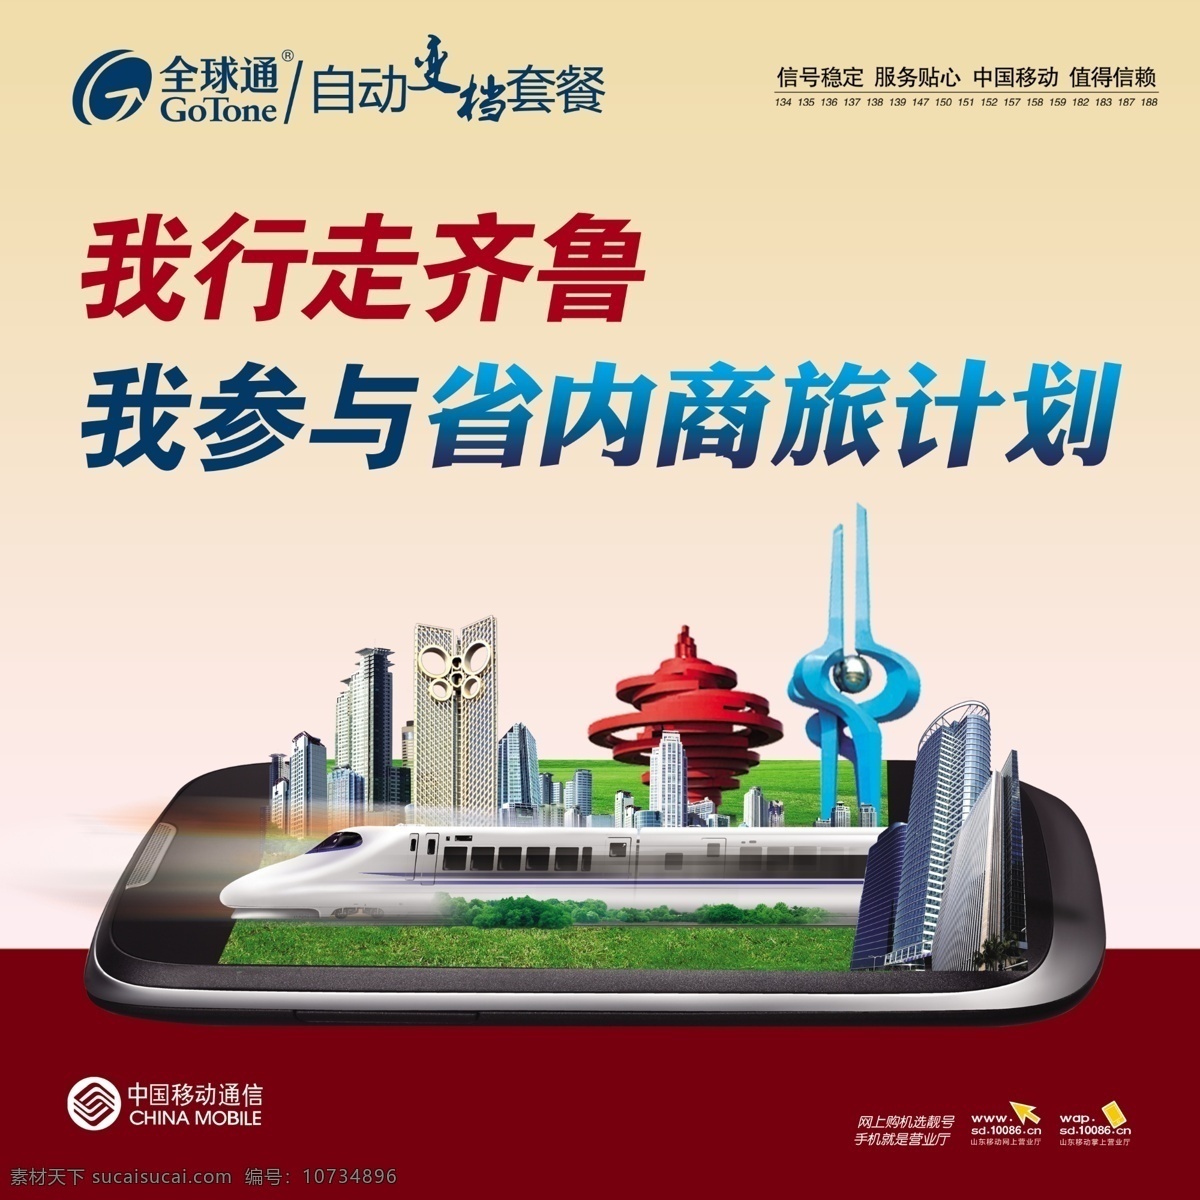 移动 省内 商旅 计划 手机 城市代表建筑 潍坊风筝广场 动车 楼房 广告设计模板 源文件